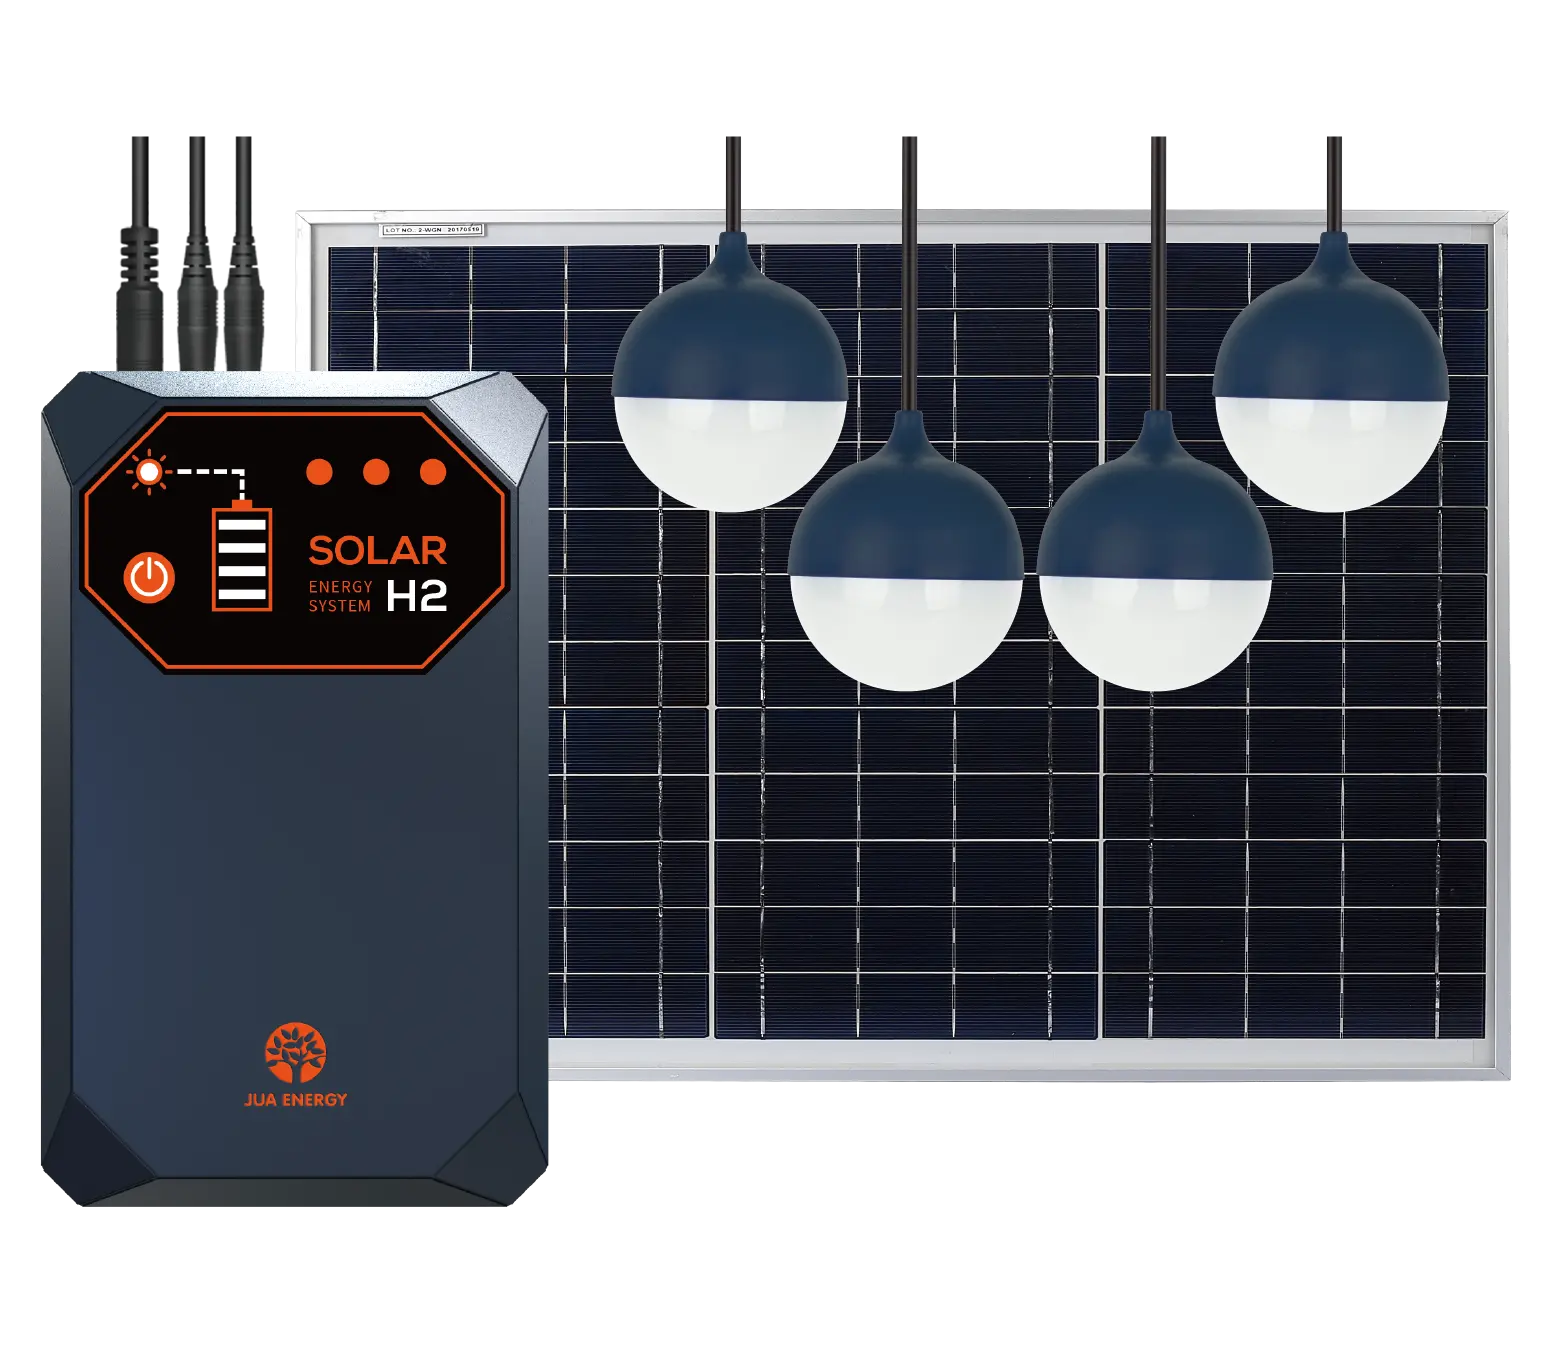 JUA الطاقة 4 LED مصابيح إضاءة الطاقة المتجددة الرئيسية كيت البسيطة نظام الطاقة الشمسية لشحن المحمول